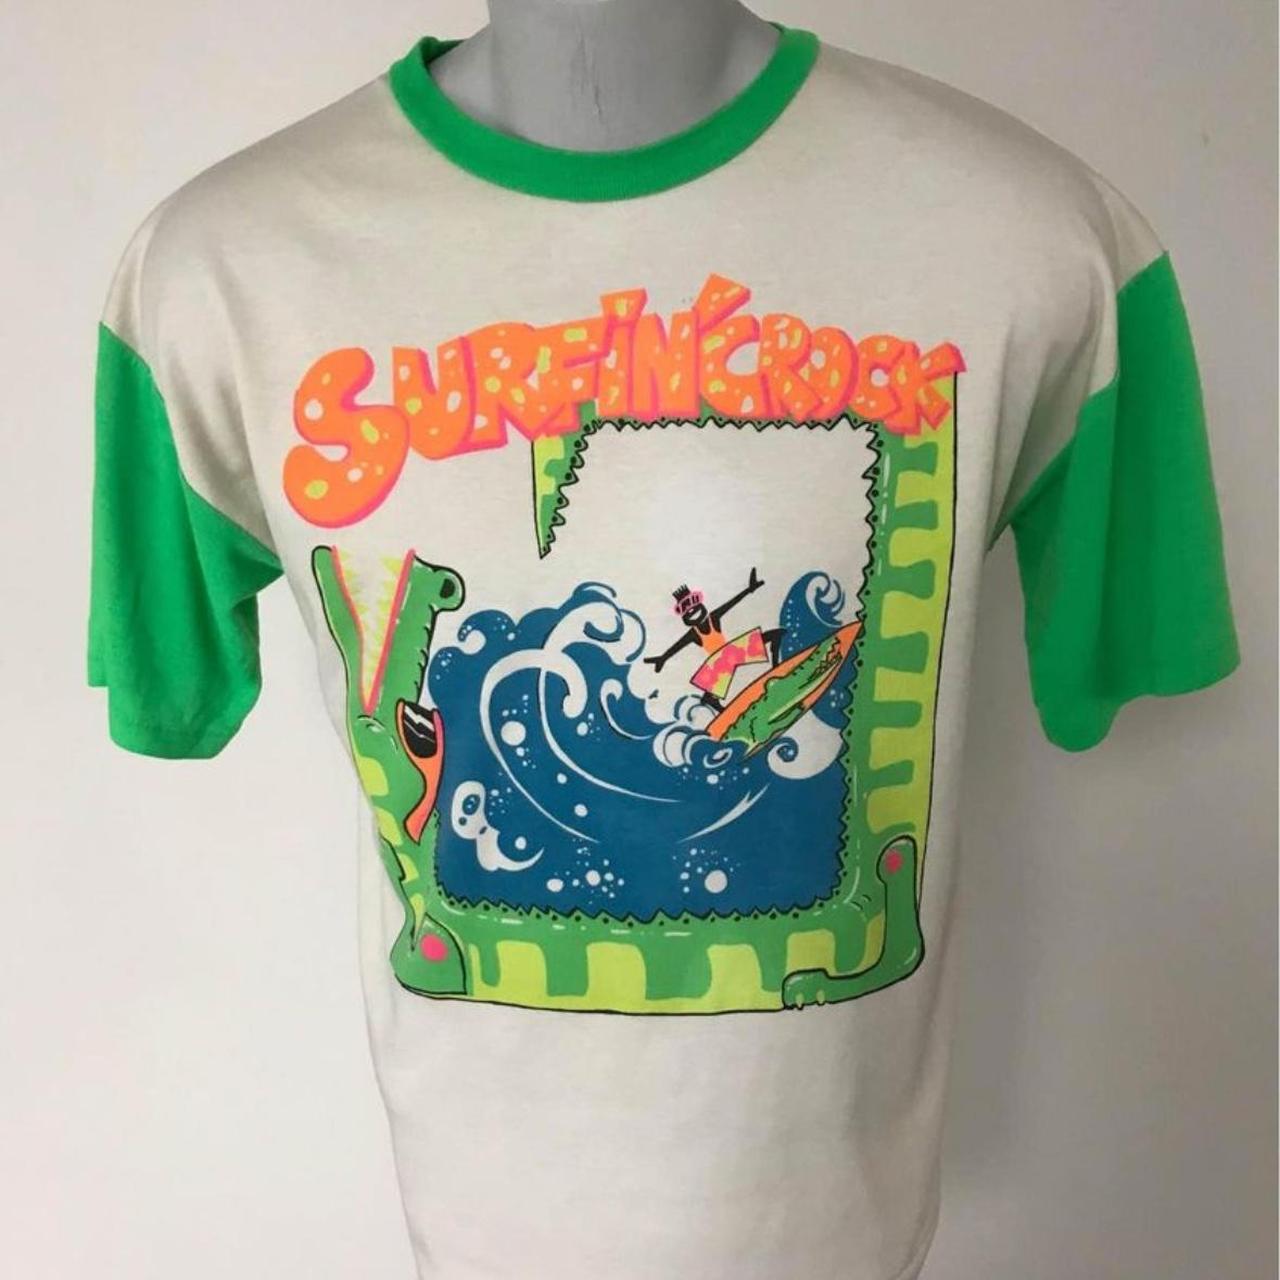 Super Cool Vintage Surfin’ Crock Shirt Men’s Size... - Depop